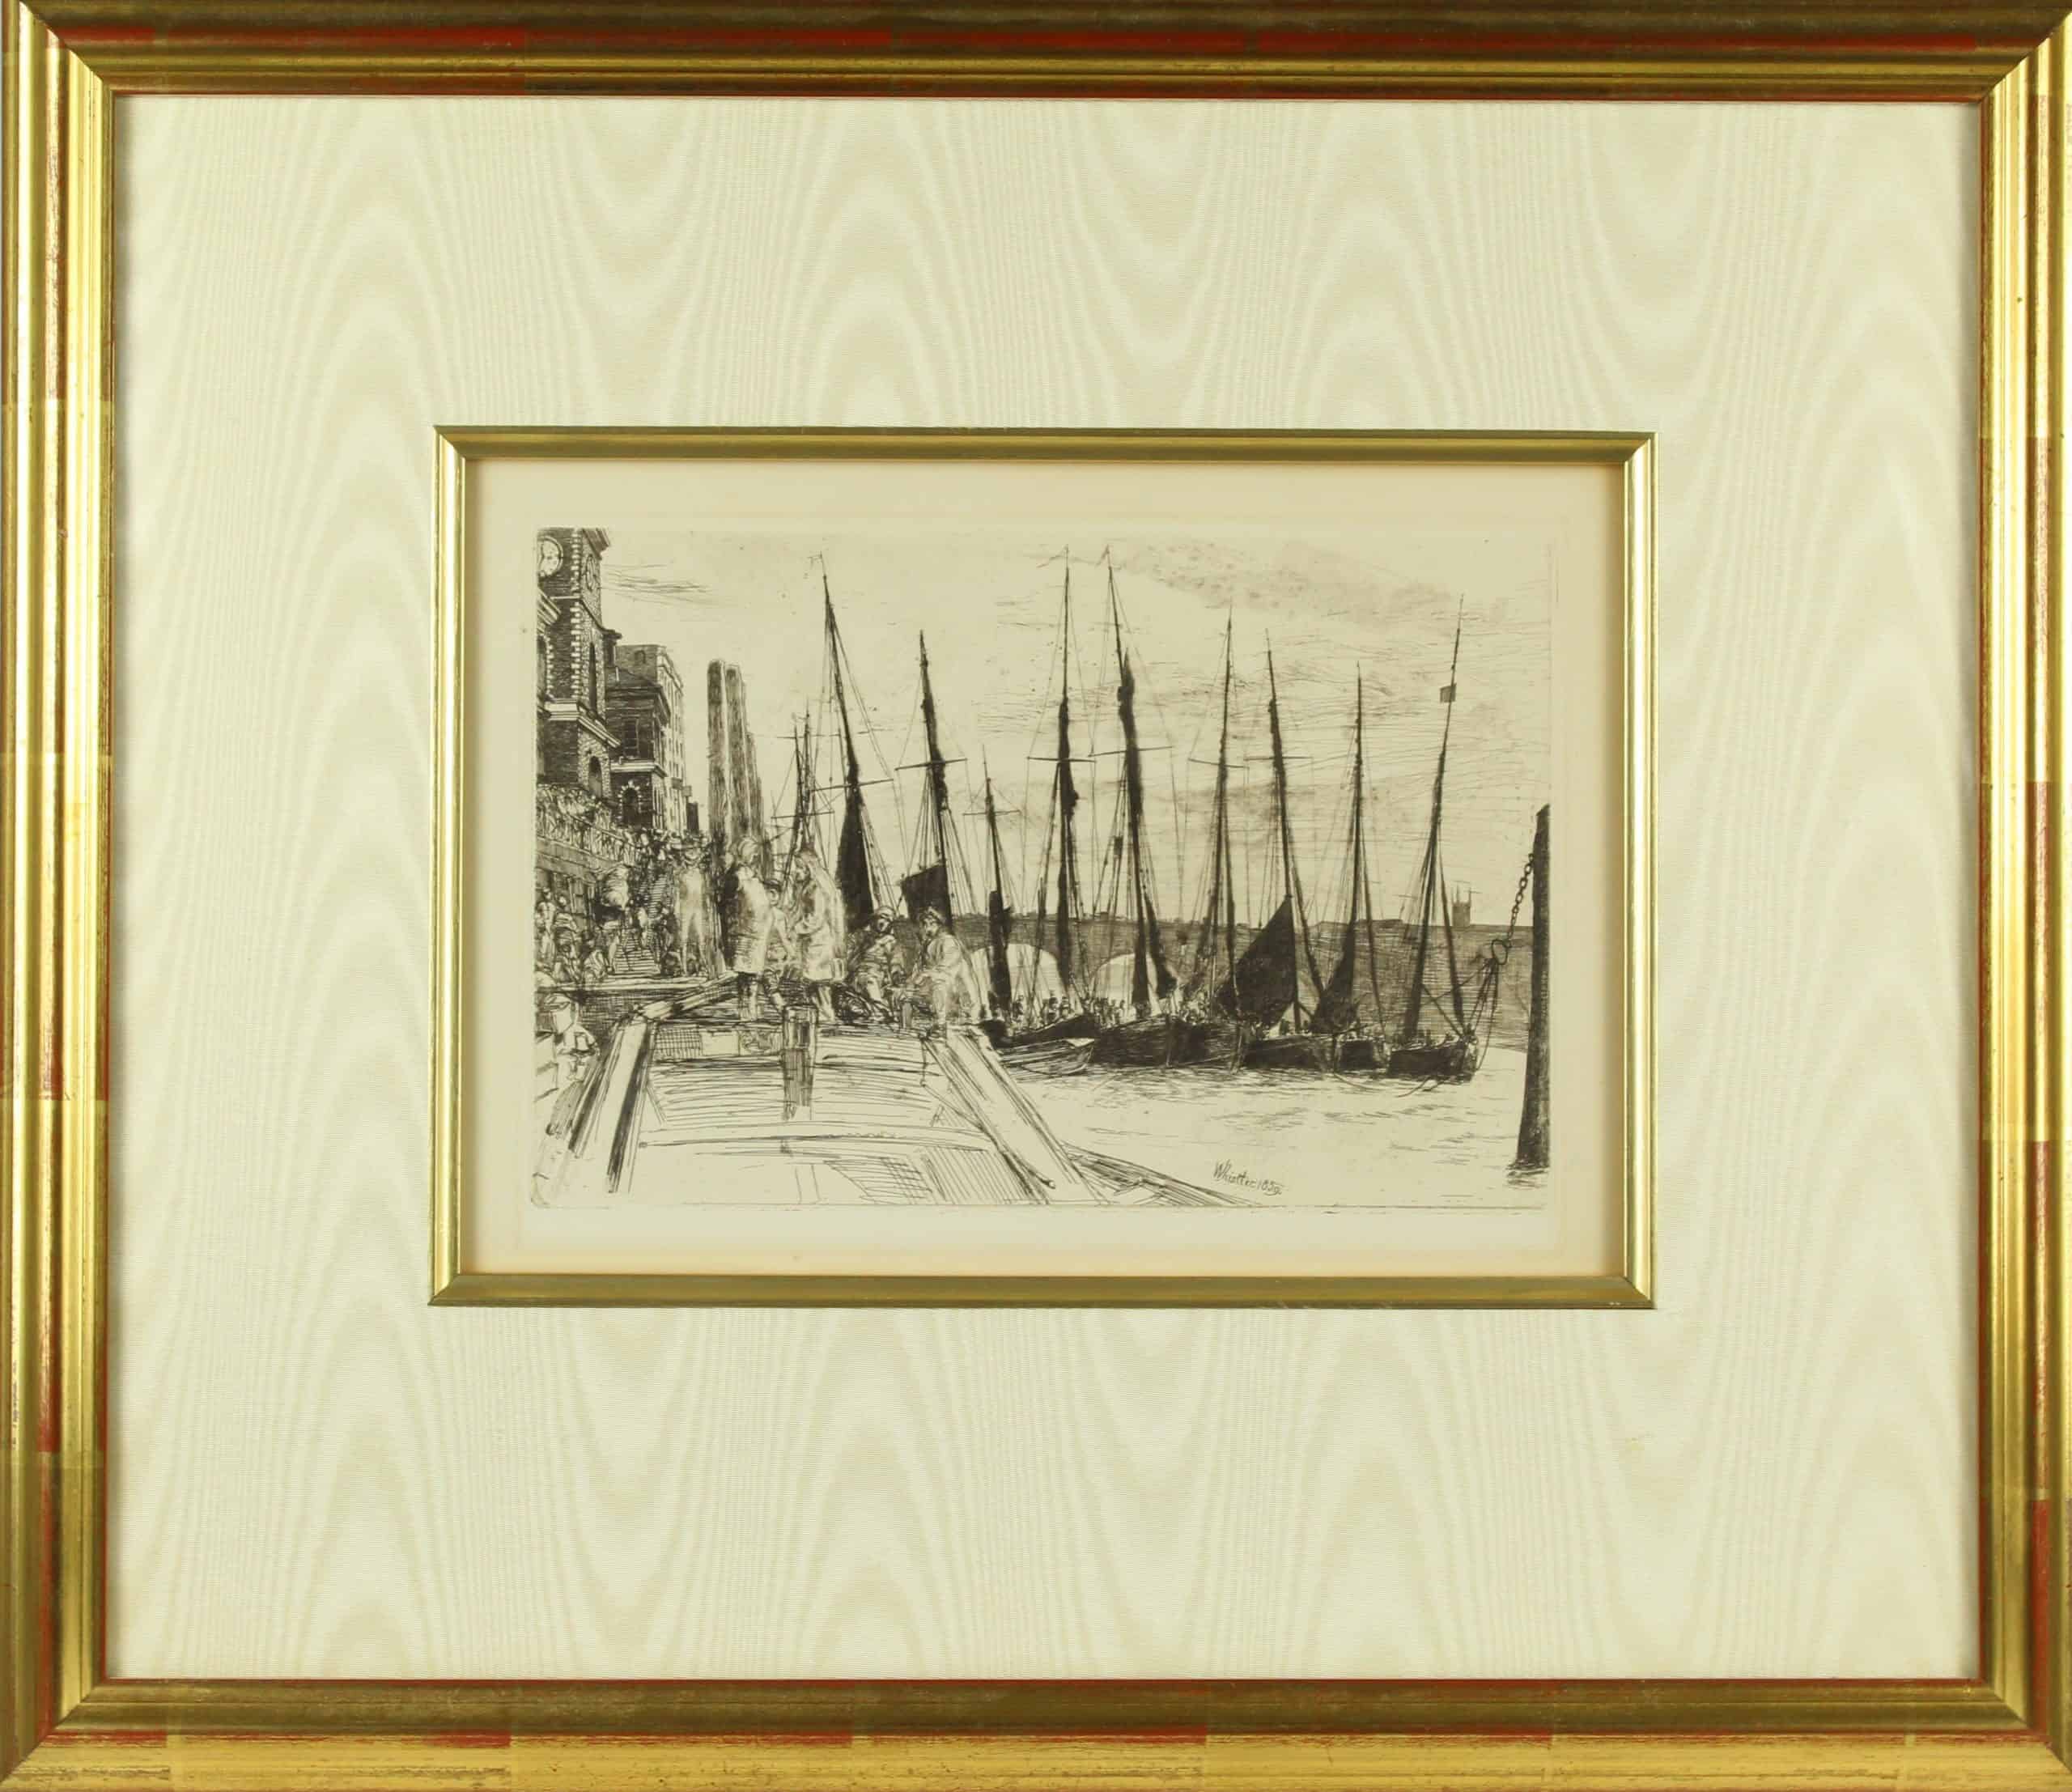 James Abbott McNeill Whistler (1834-1903) Etching